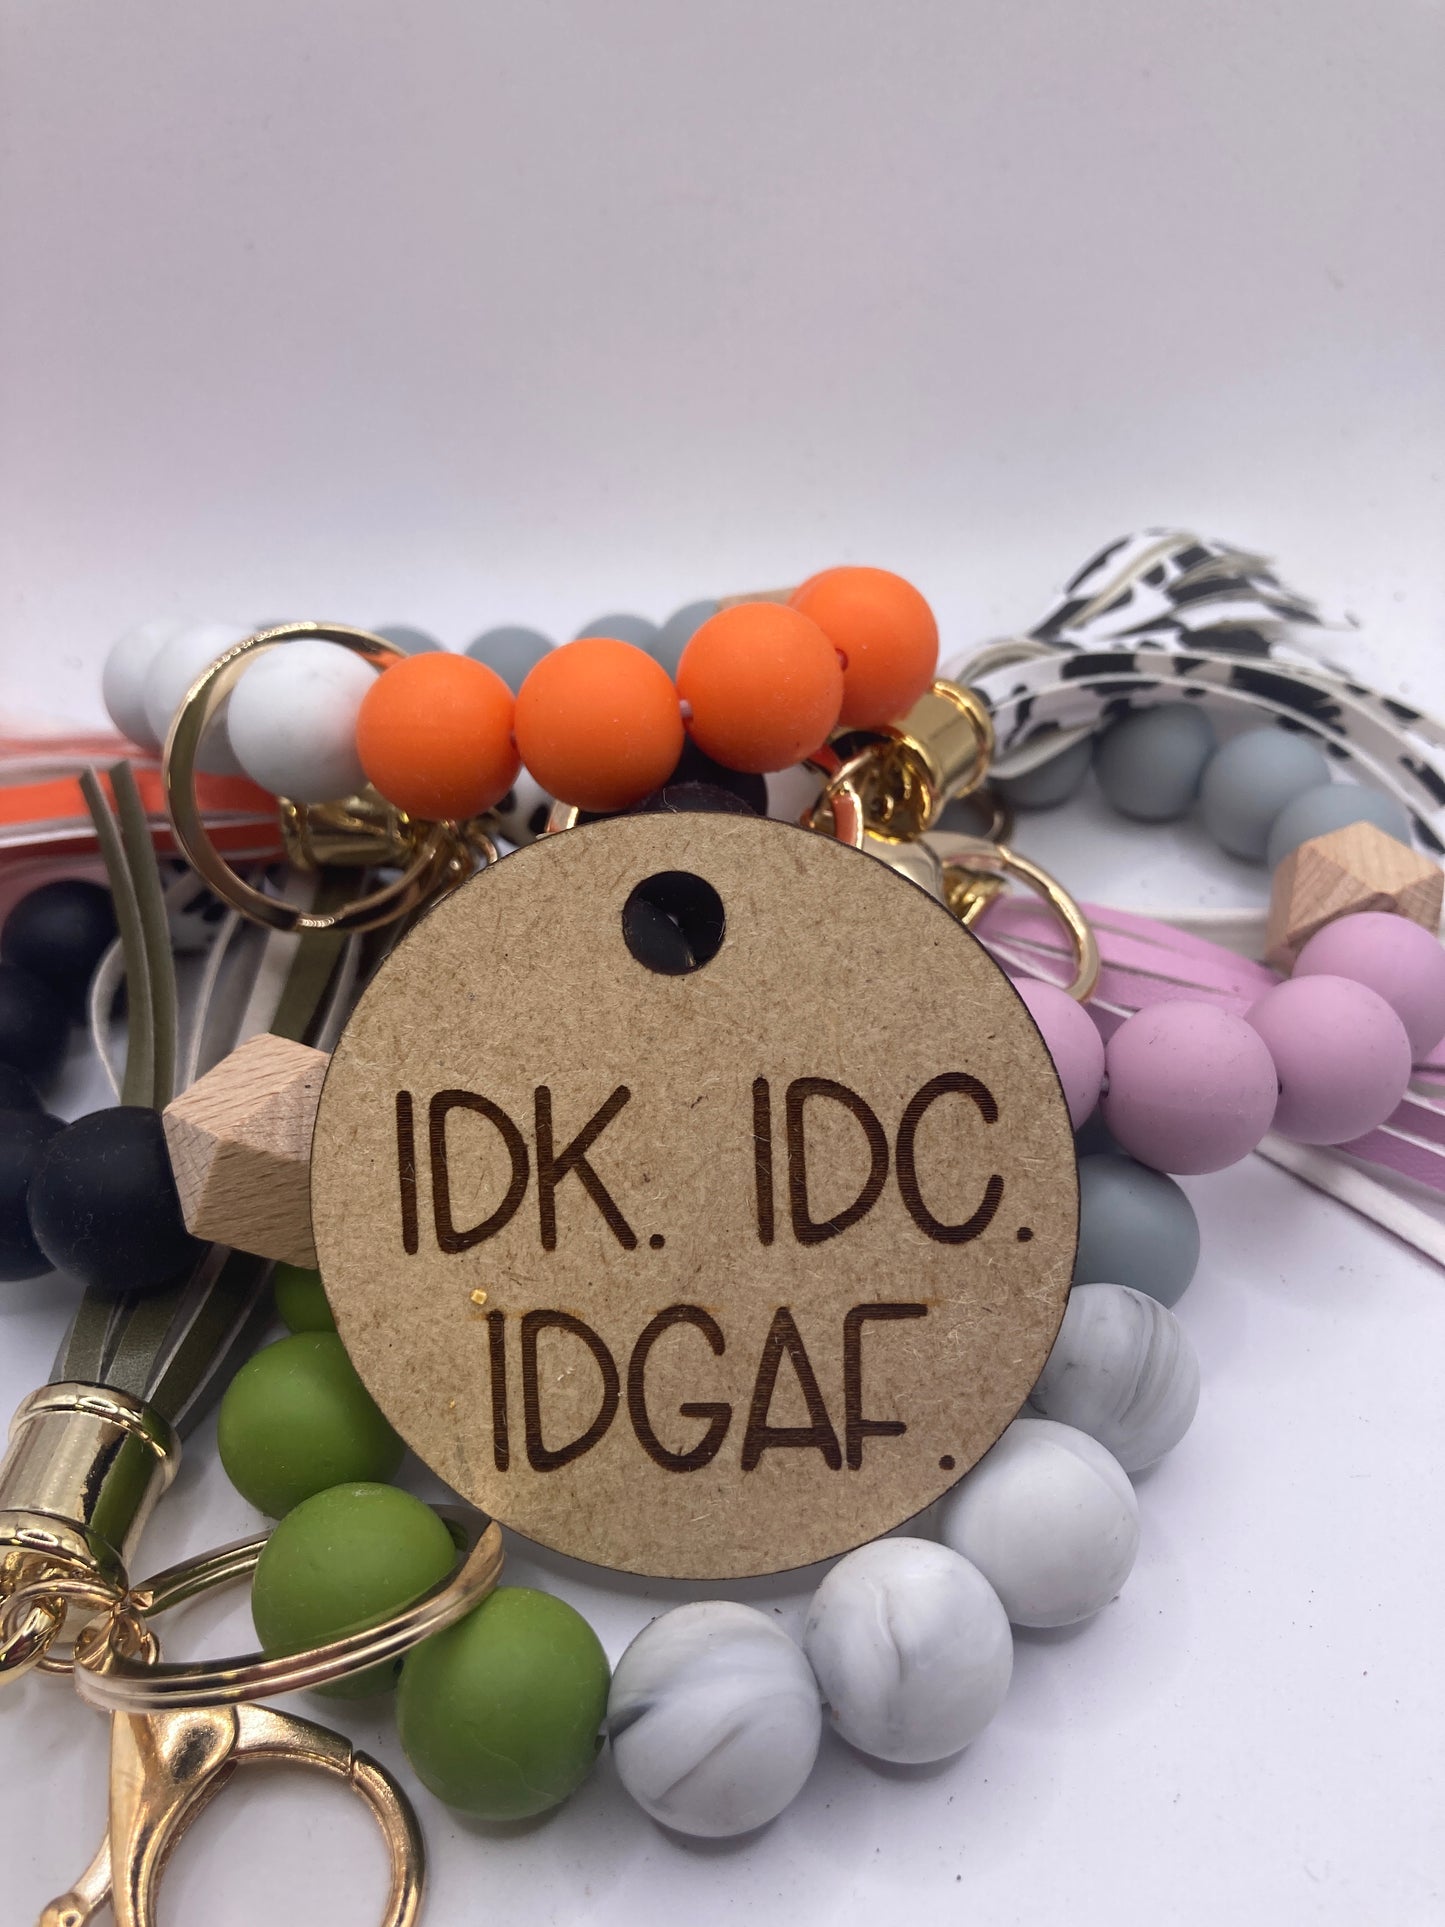 IDK IDC IDGAF Wooden Accessory Token